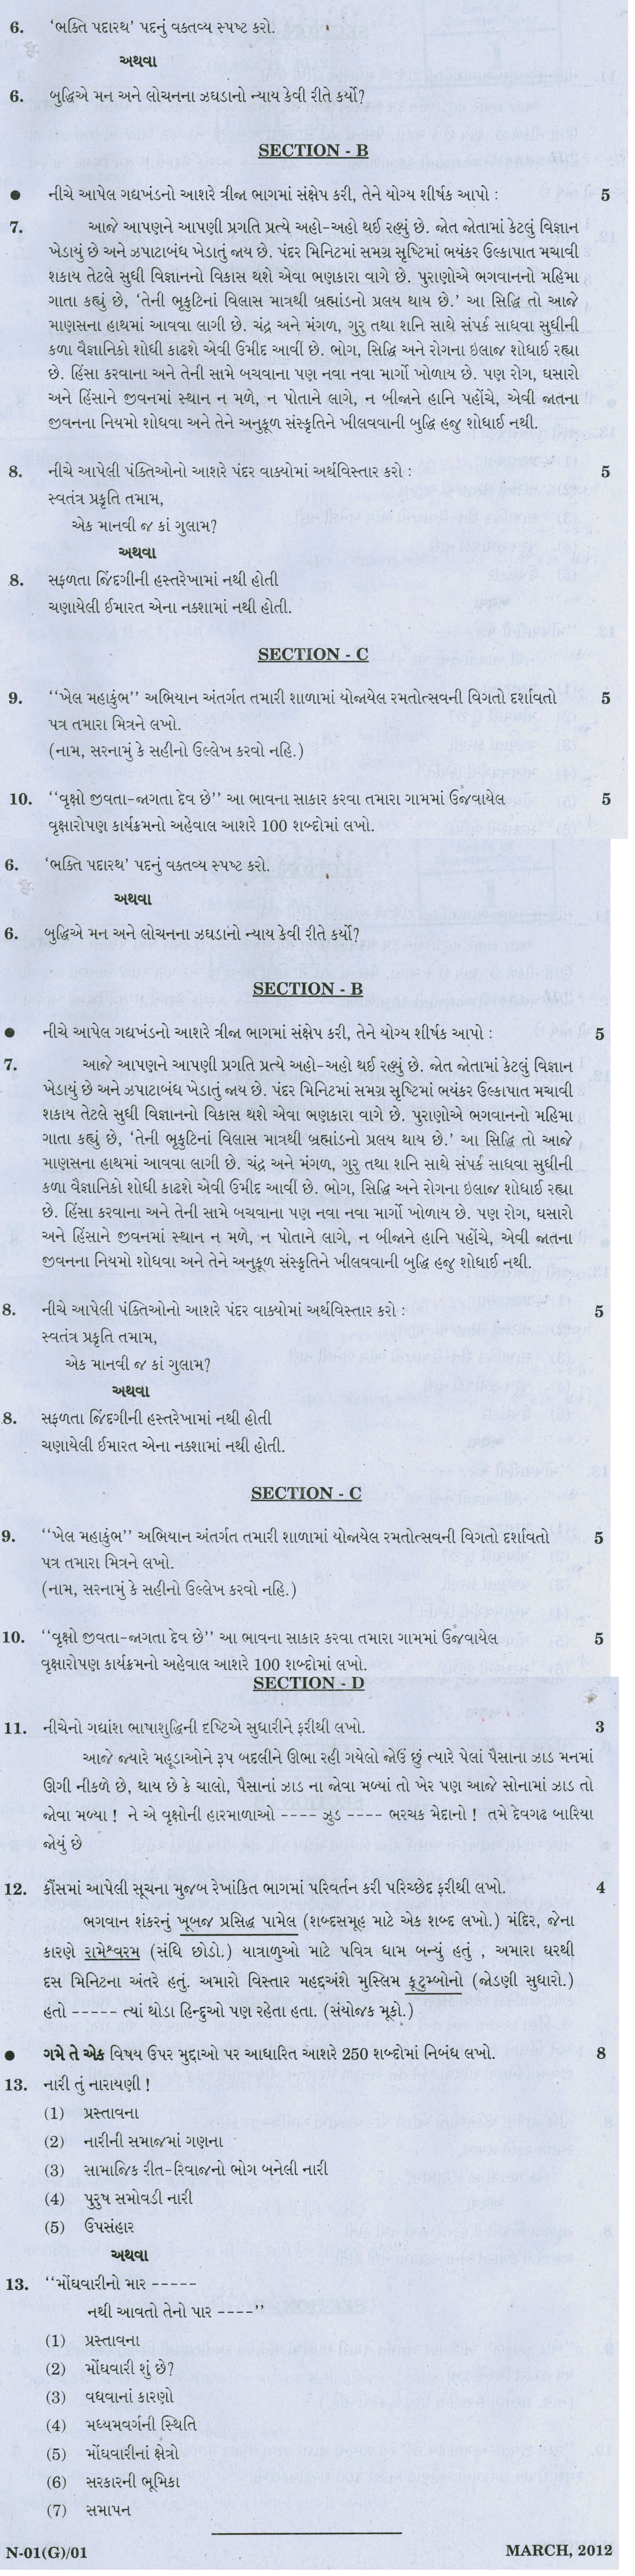 Gujarat Board Class X Question Papers (Gujarati Medium) 2012 - Gujarati